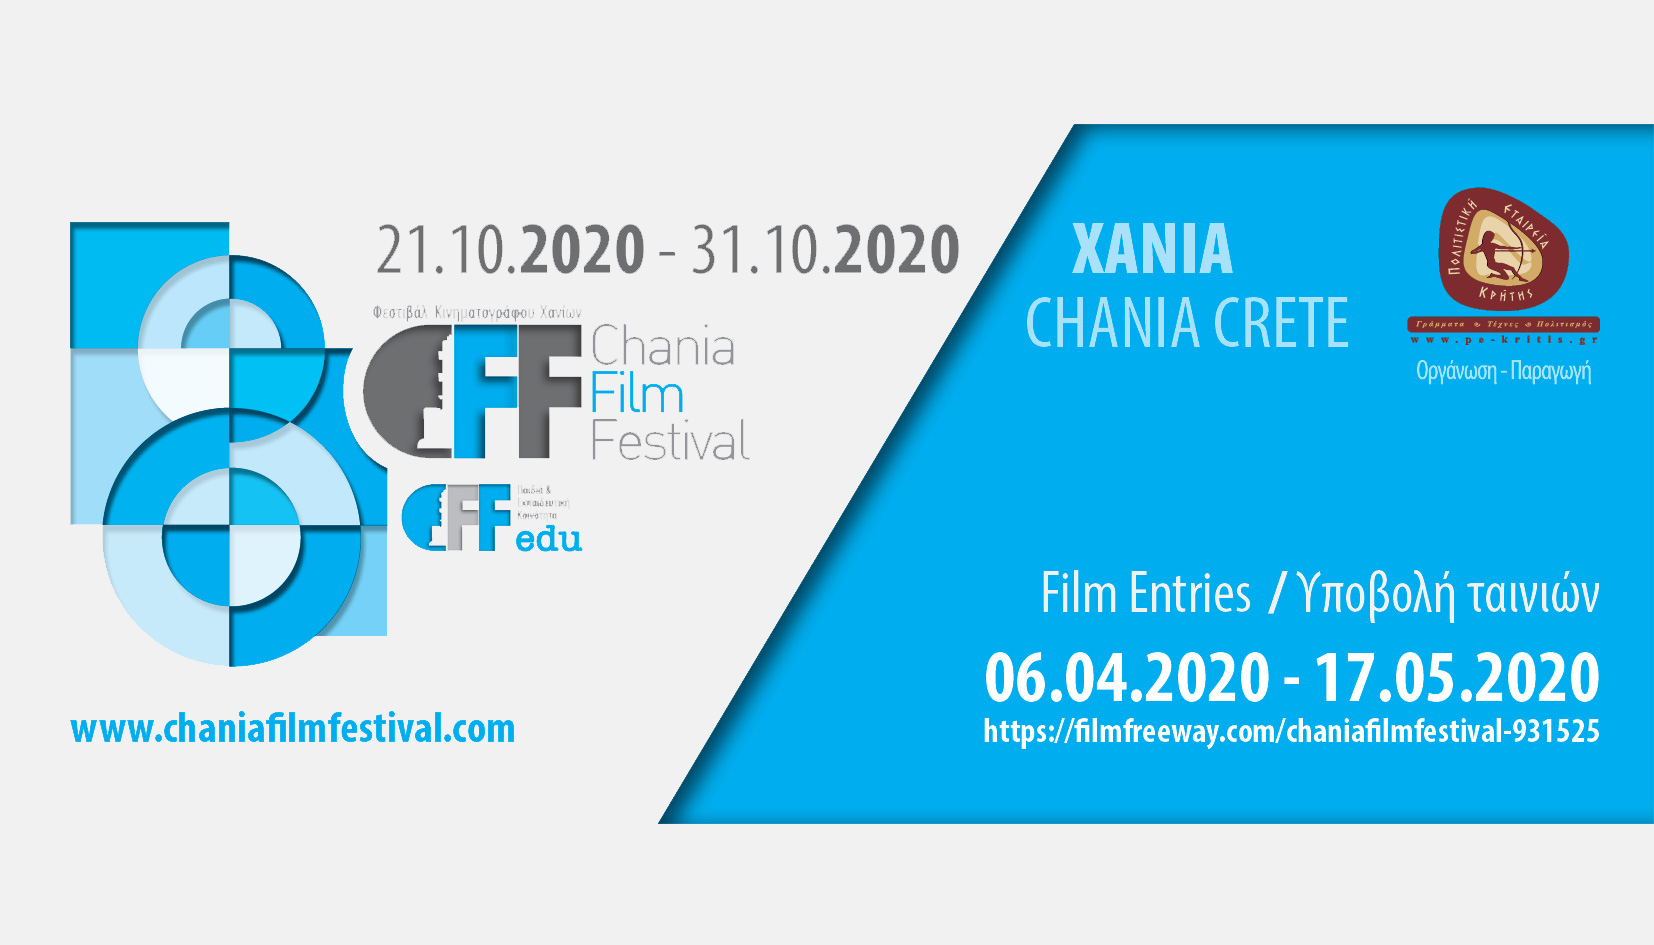 Ξεκίνησε η υποβολή ταινιών για το 8ο Φεστιβάλ Κινηματογράφου Χανίων